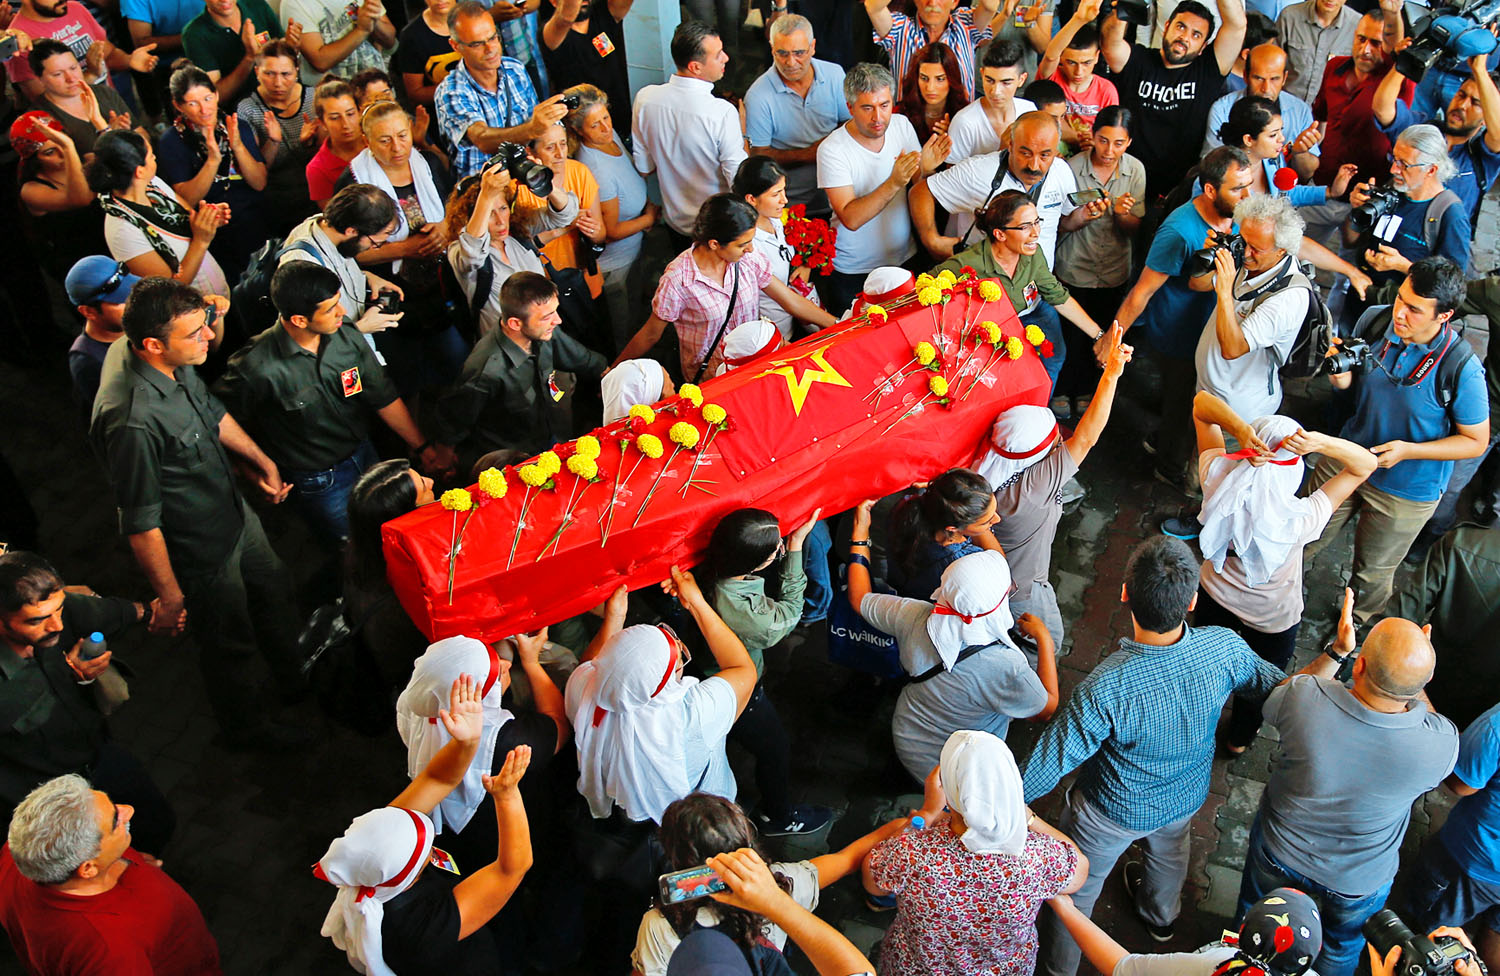 Günay Özarslan baloldali aktivistát temetik, aki a török rendőrség és kurd tüntetők összecsapásában halt meg Isztambulban